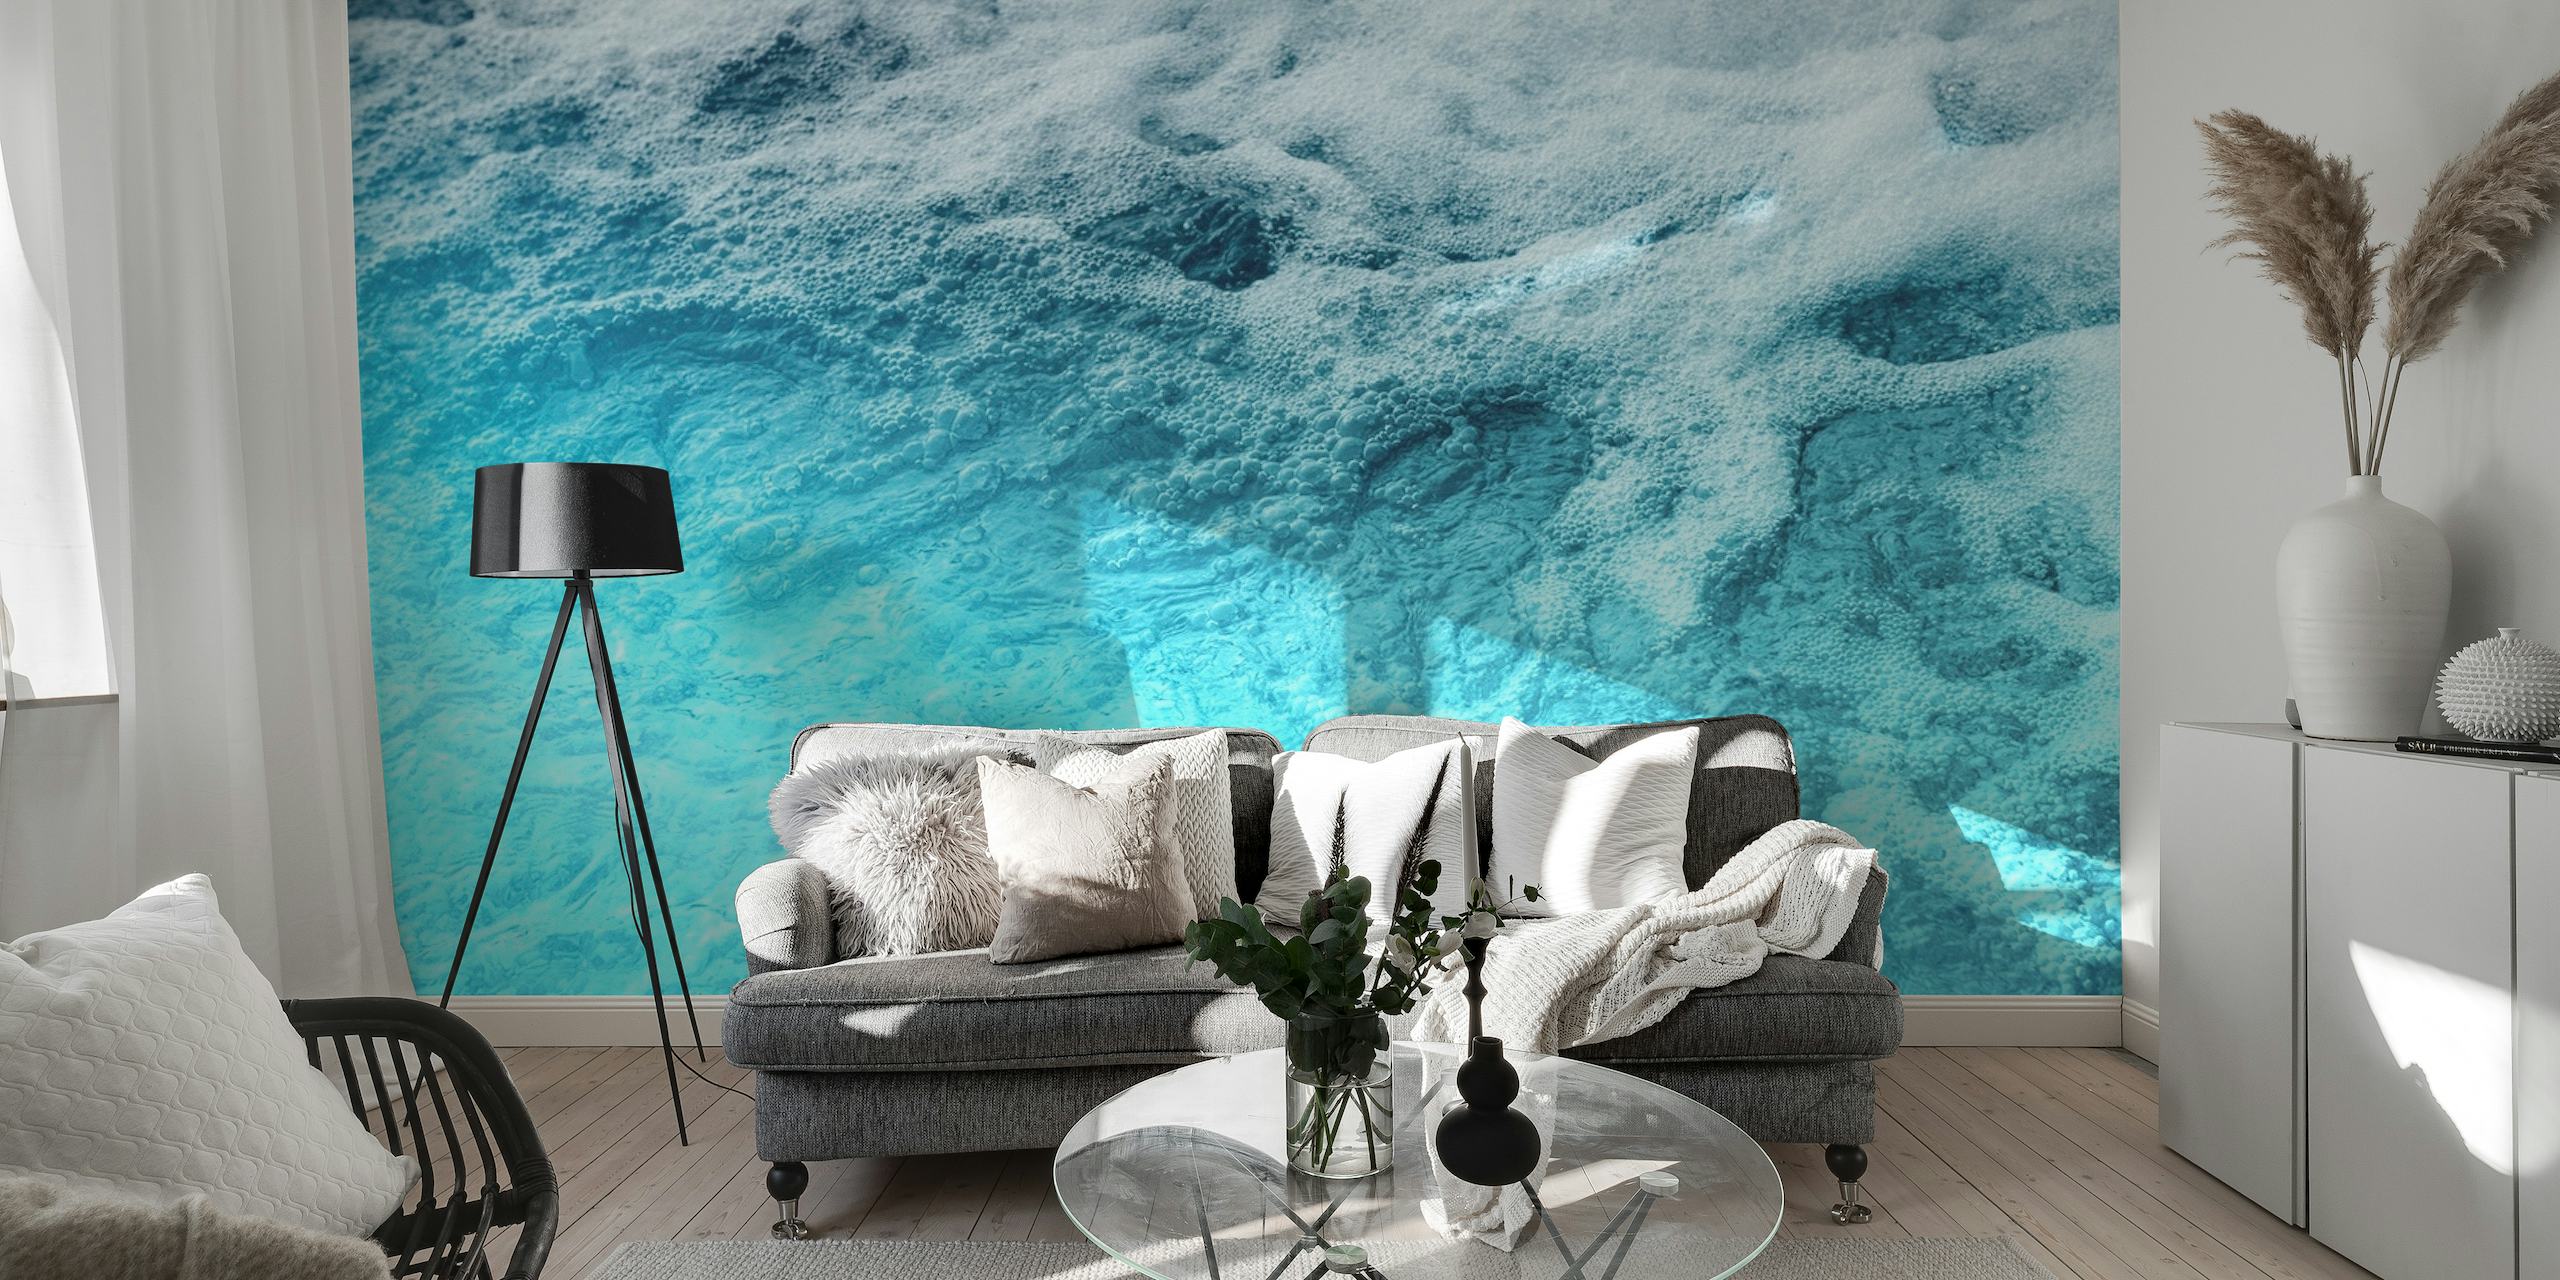 Fototapete auf der Meeresoberfläche mit Blautönen, die Ruhe und Tiefe darstellen